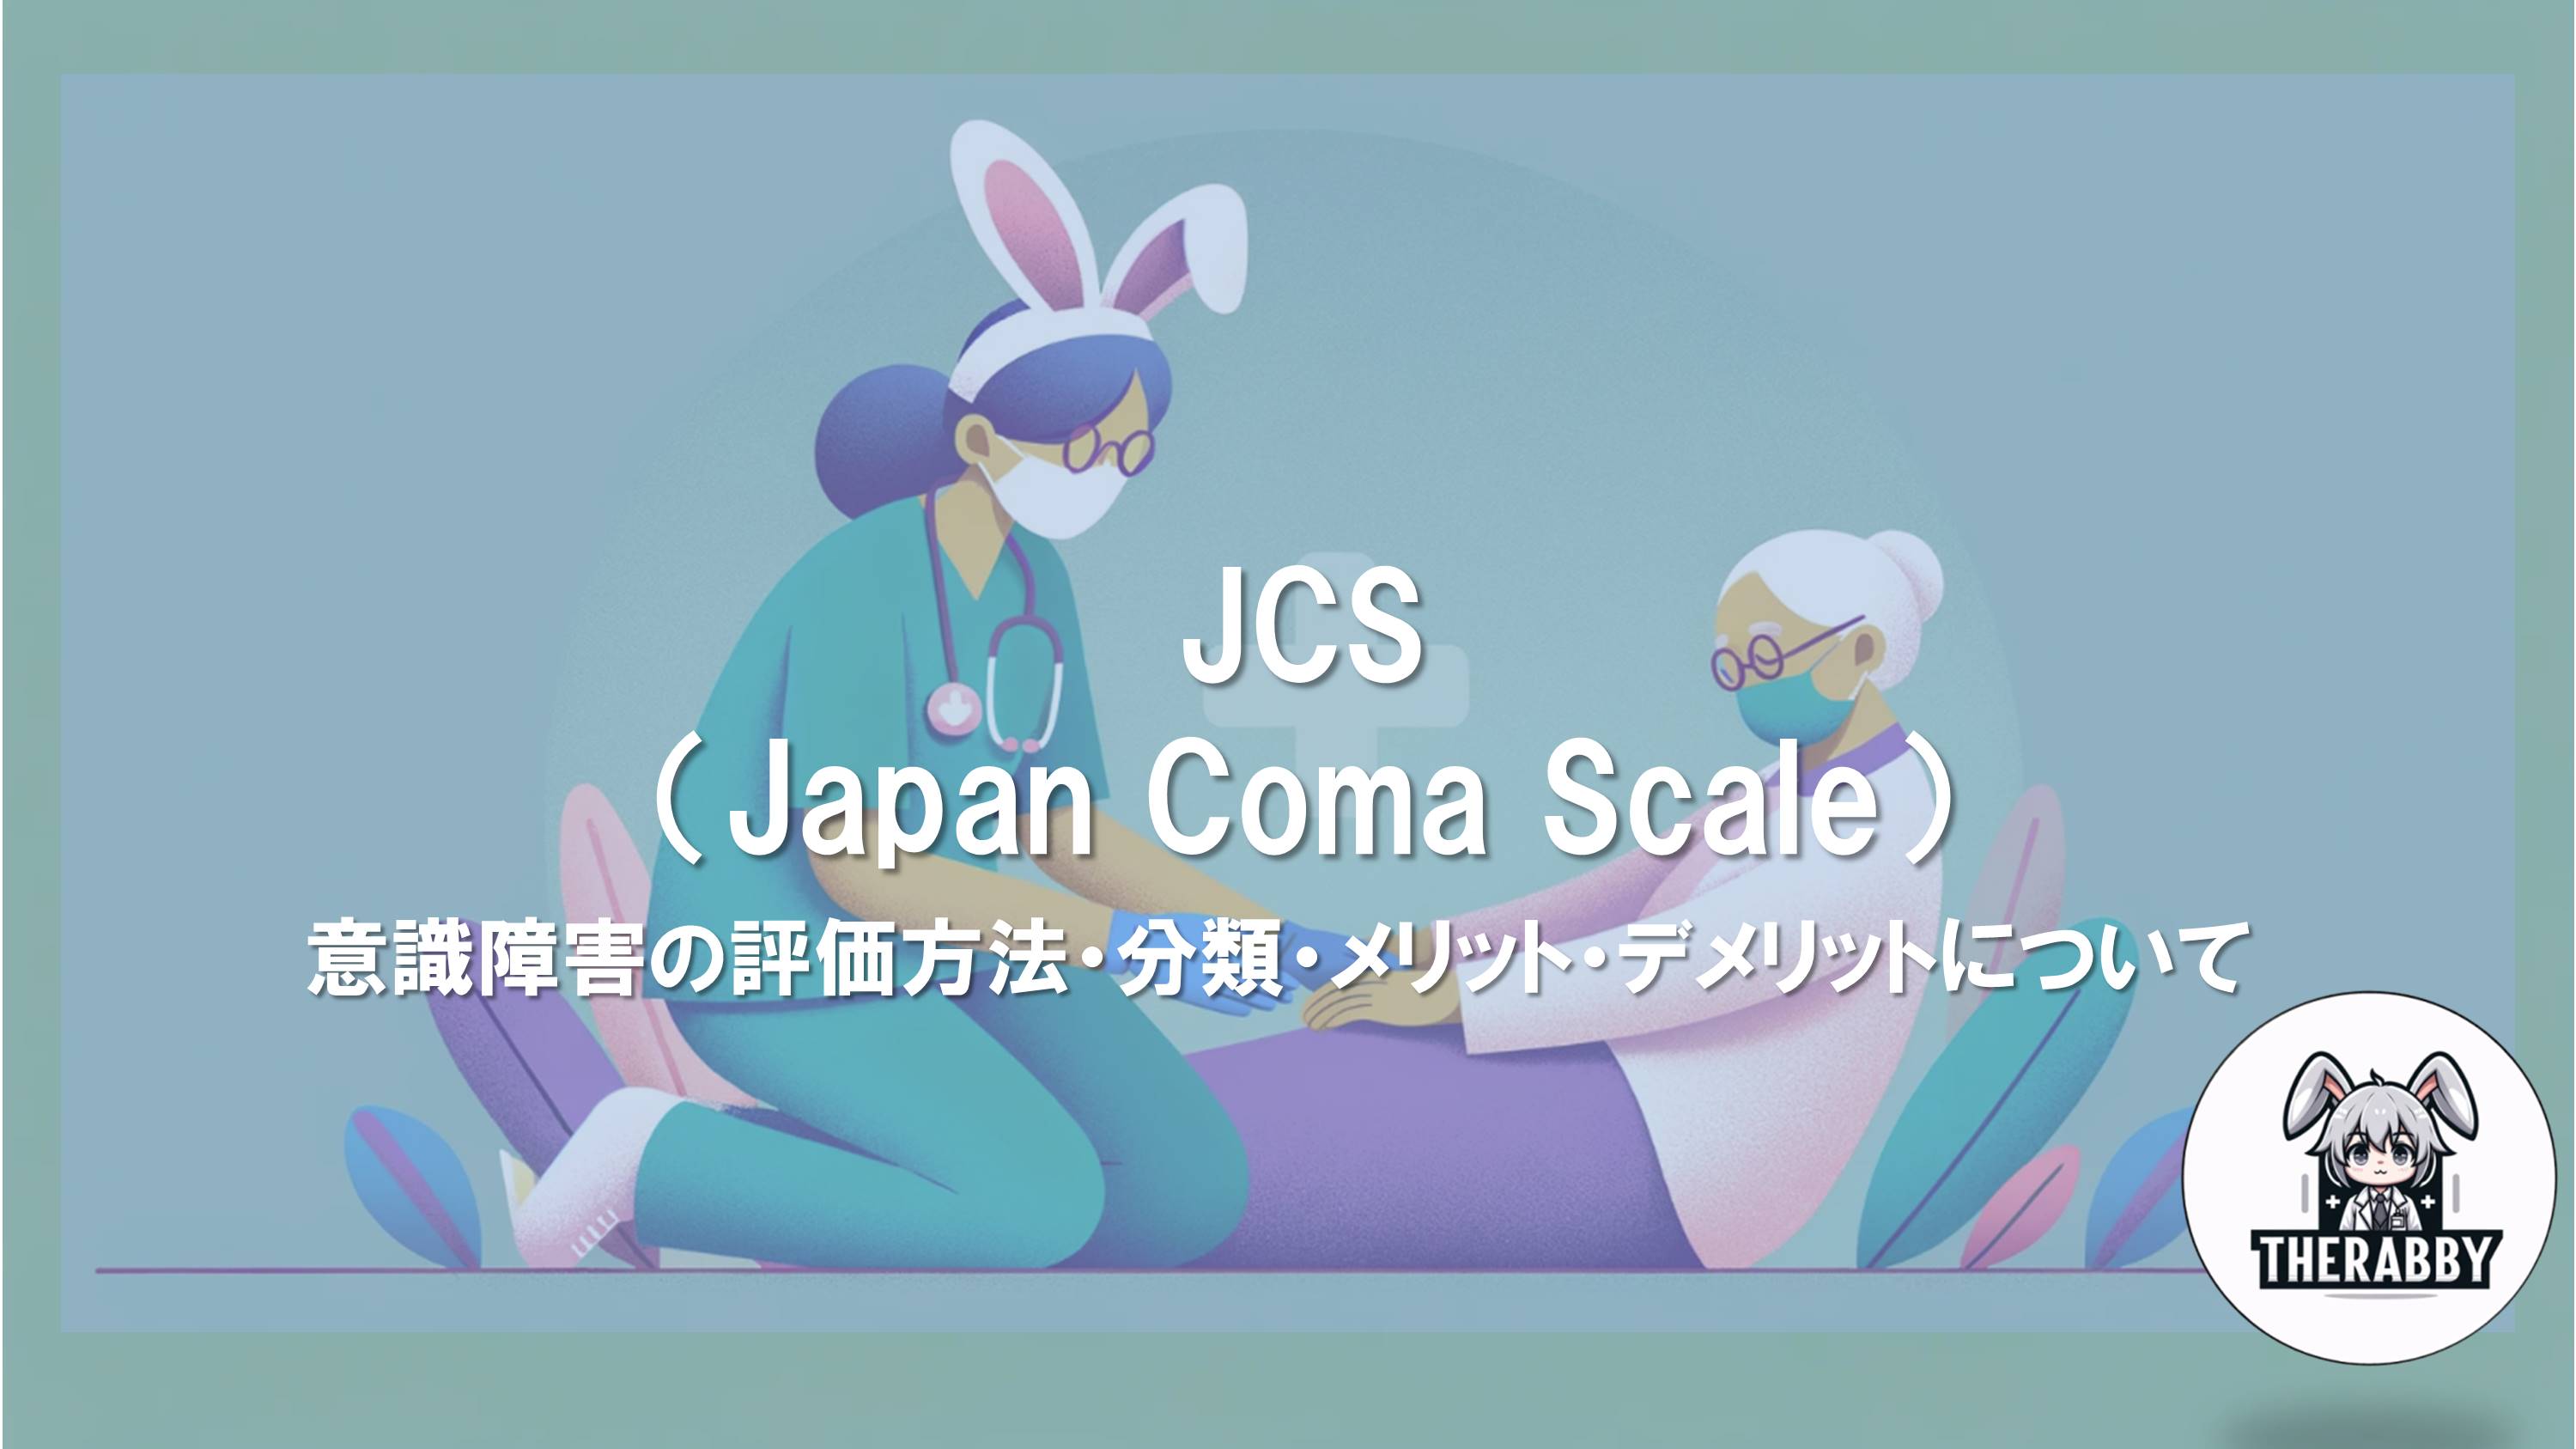 JCS（Japan Coma Scale） - 意識障害の評価方法・分類・メリット・デメリットについて